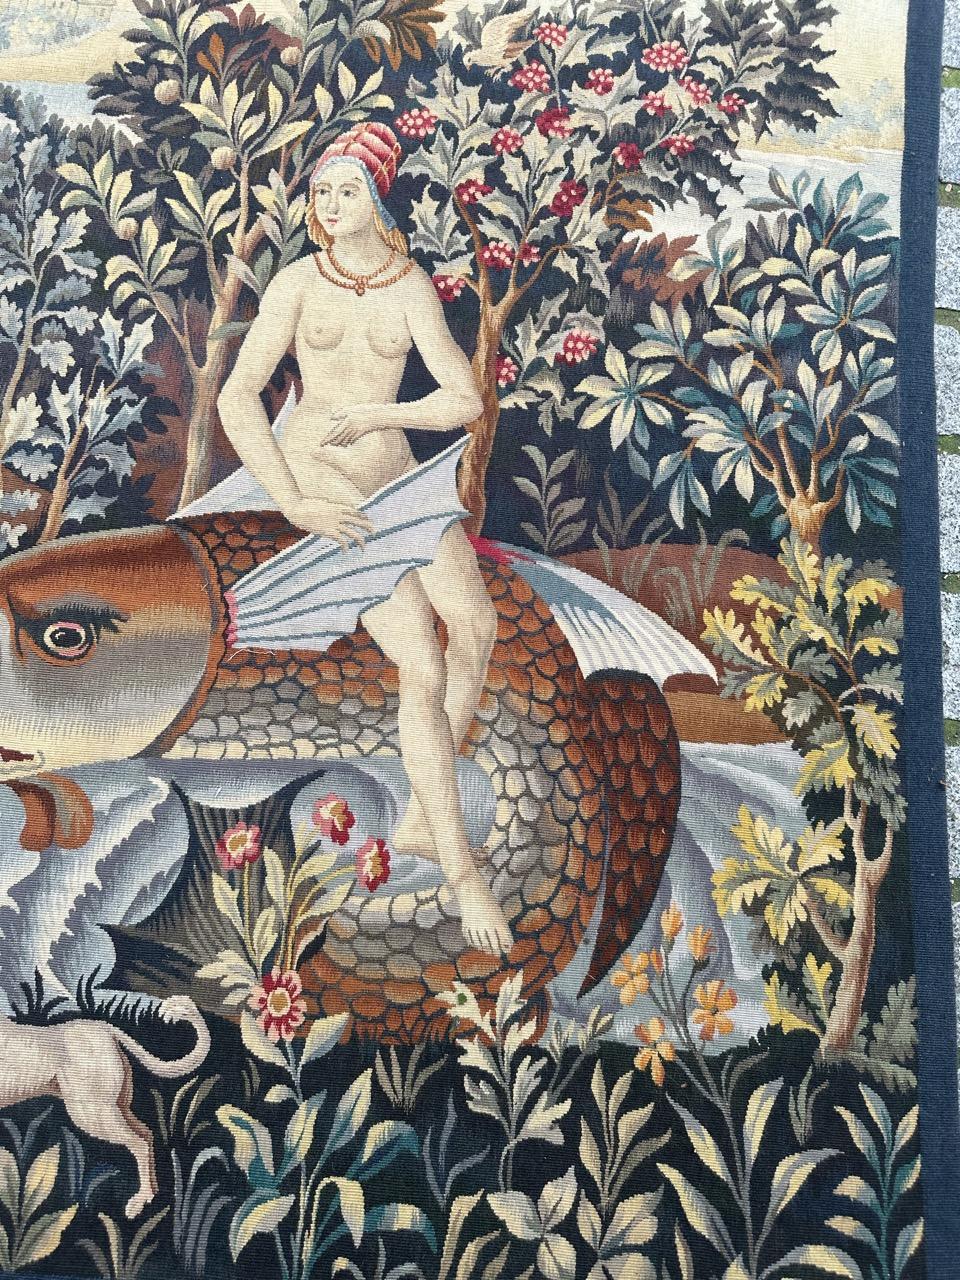 Découvrez l'élégance intemporelle de cette exquise tapisserie d'Elegon datant de la seconde moitié du XXe siècle. Doté d'un design captivant rappelant les tapisseries médiévales, il représente une scène de Persée de la mythologie grecque, on peut y